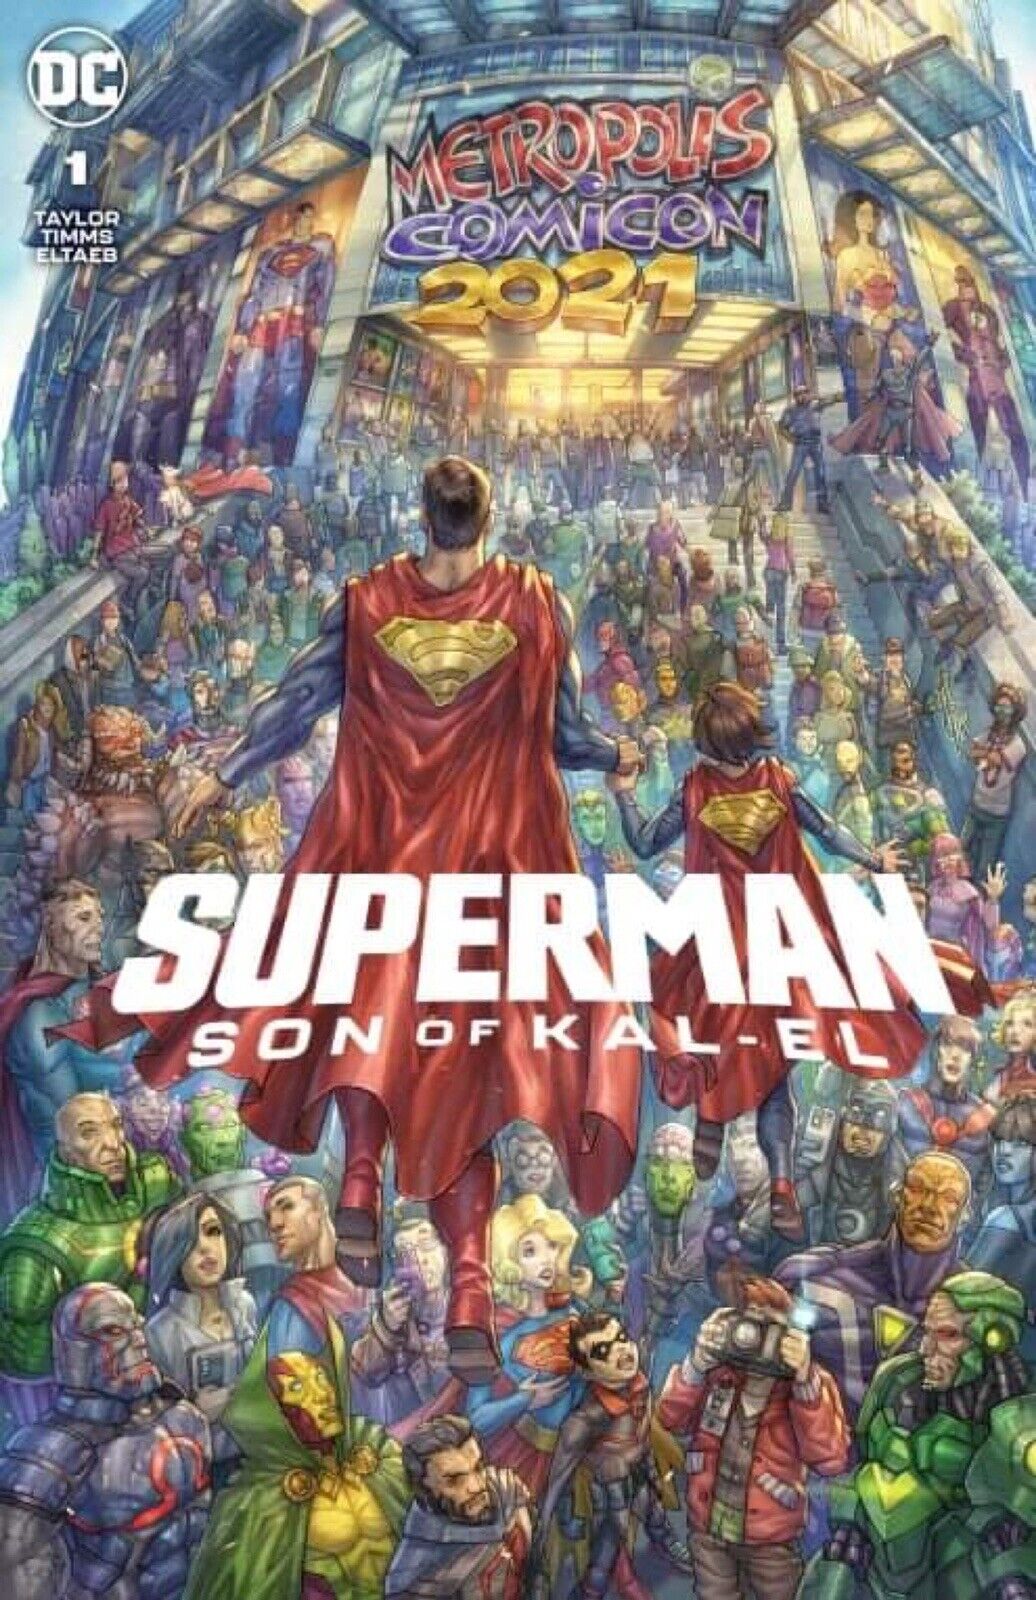 🚨💥 SUPERMAN SON OF KAL-EL #1 ALAN QUAH Exclusive Trade Dress Variant LTD 3000